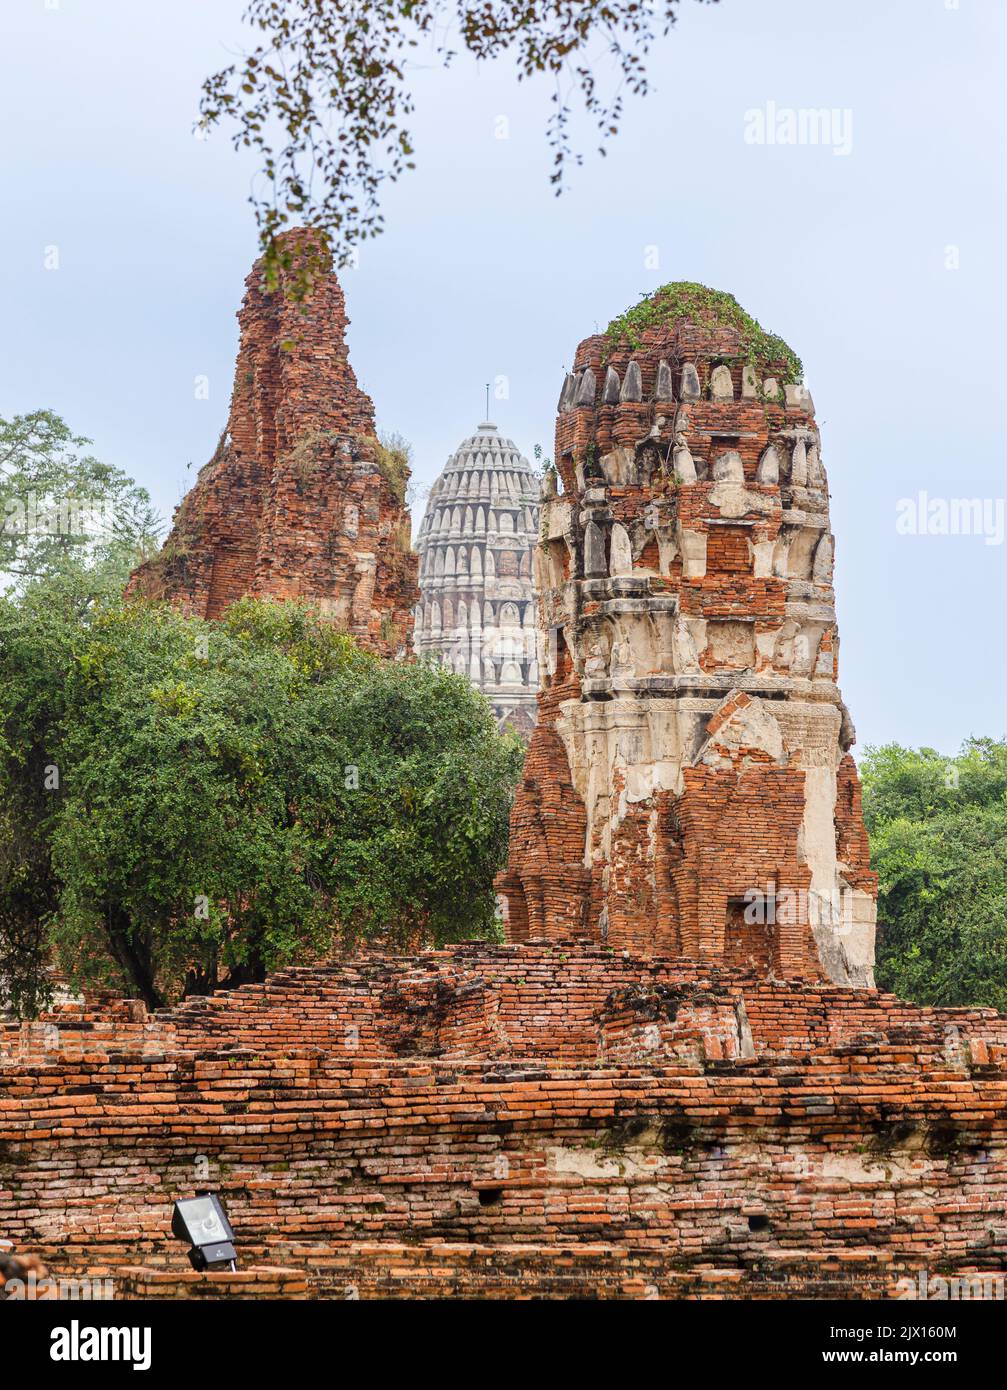 Ruinosos, desmoronándose bromas de ladrillo rojo en las ruinas de Wat Maha That, el sagrado templo real de Ayutthaya, Tailandia Foto de stock